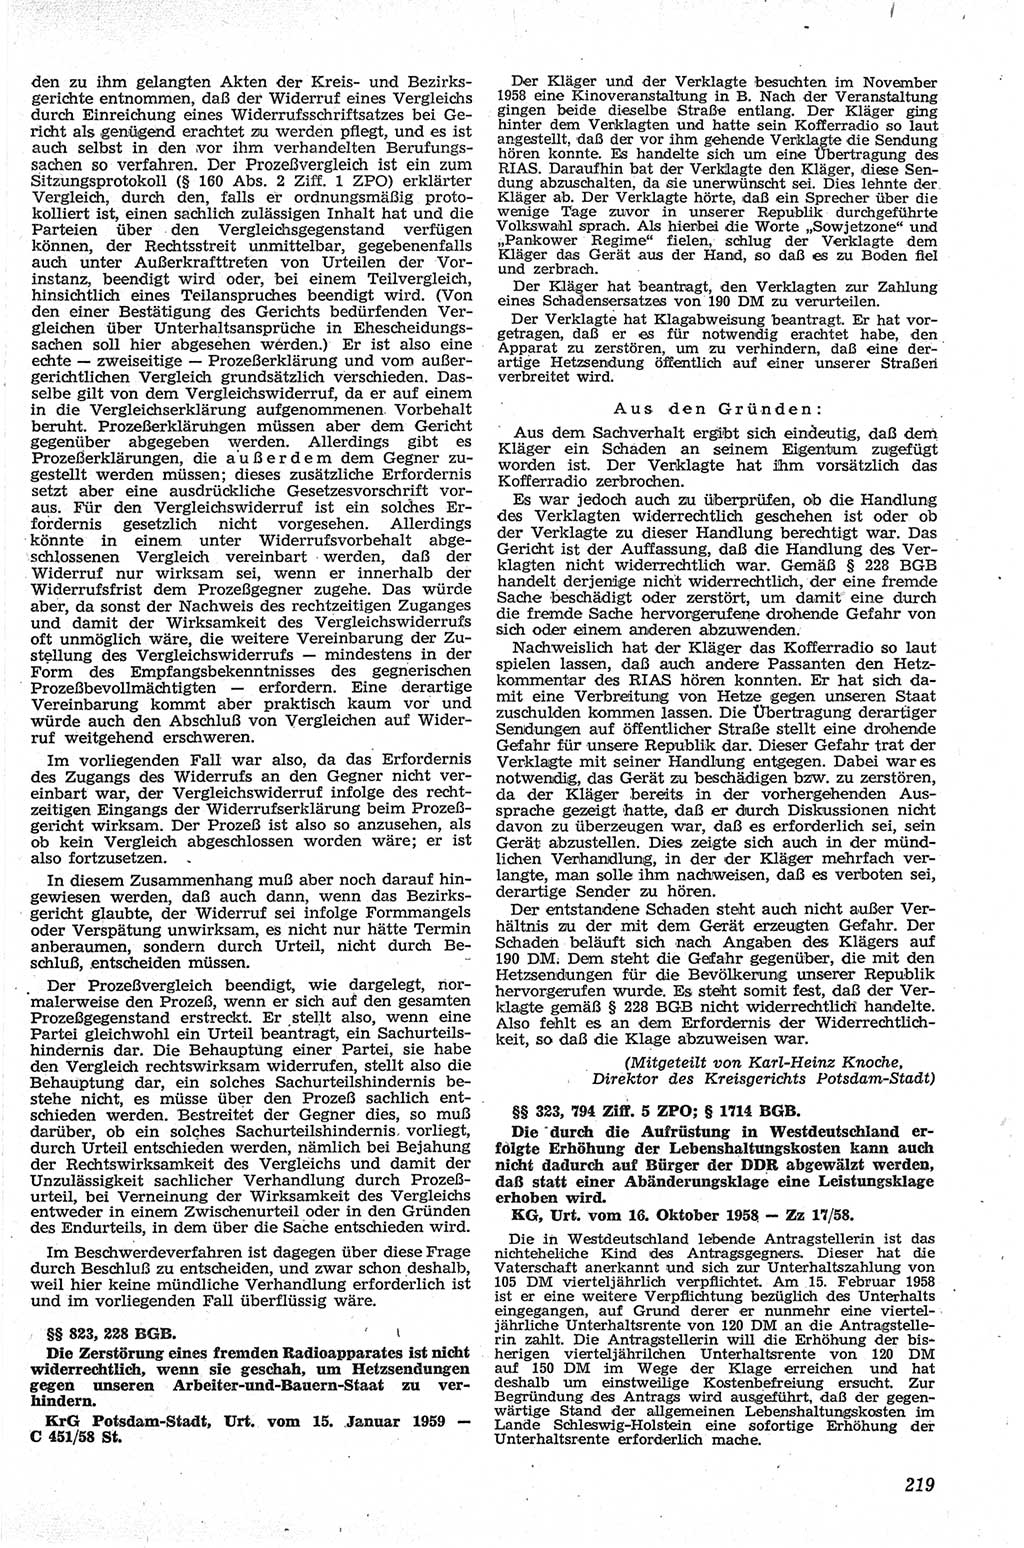 Neue Justiz (NJ), Zeitschrift für Recht und Rechtswissenschaft [Deutsche Demokratische Republik (DDR)], 13. Jahrgang 1959, Seite 219 (NJ DDR 1959, S. 219)